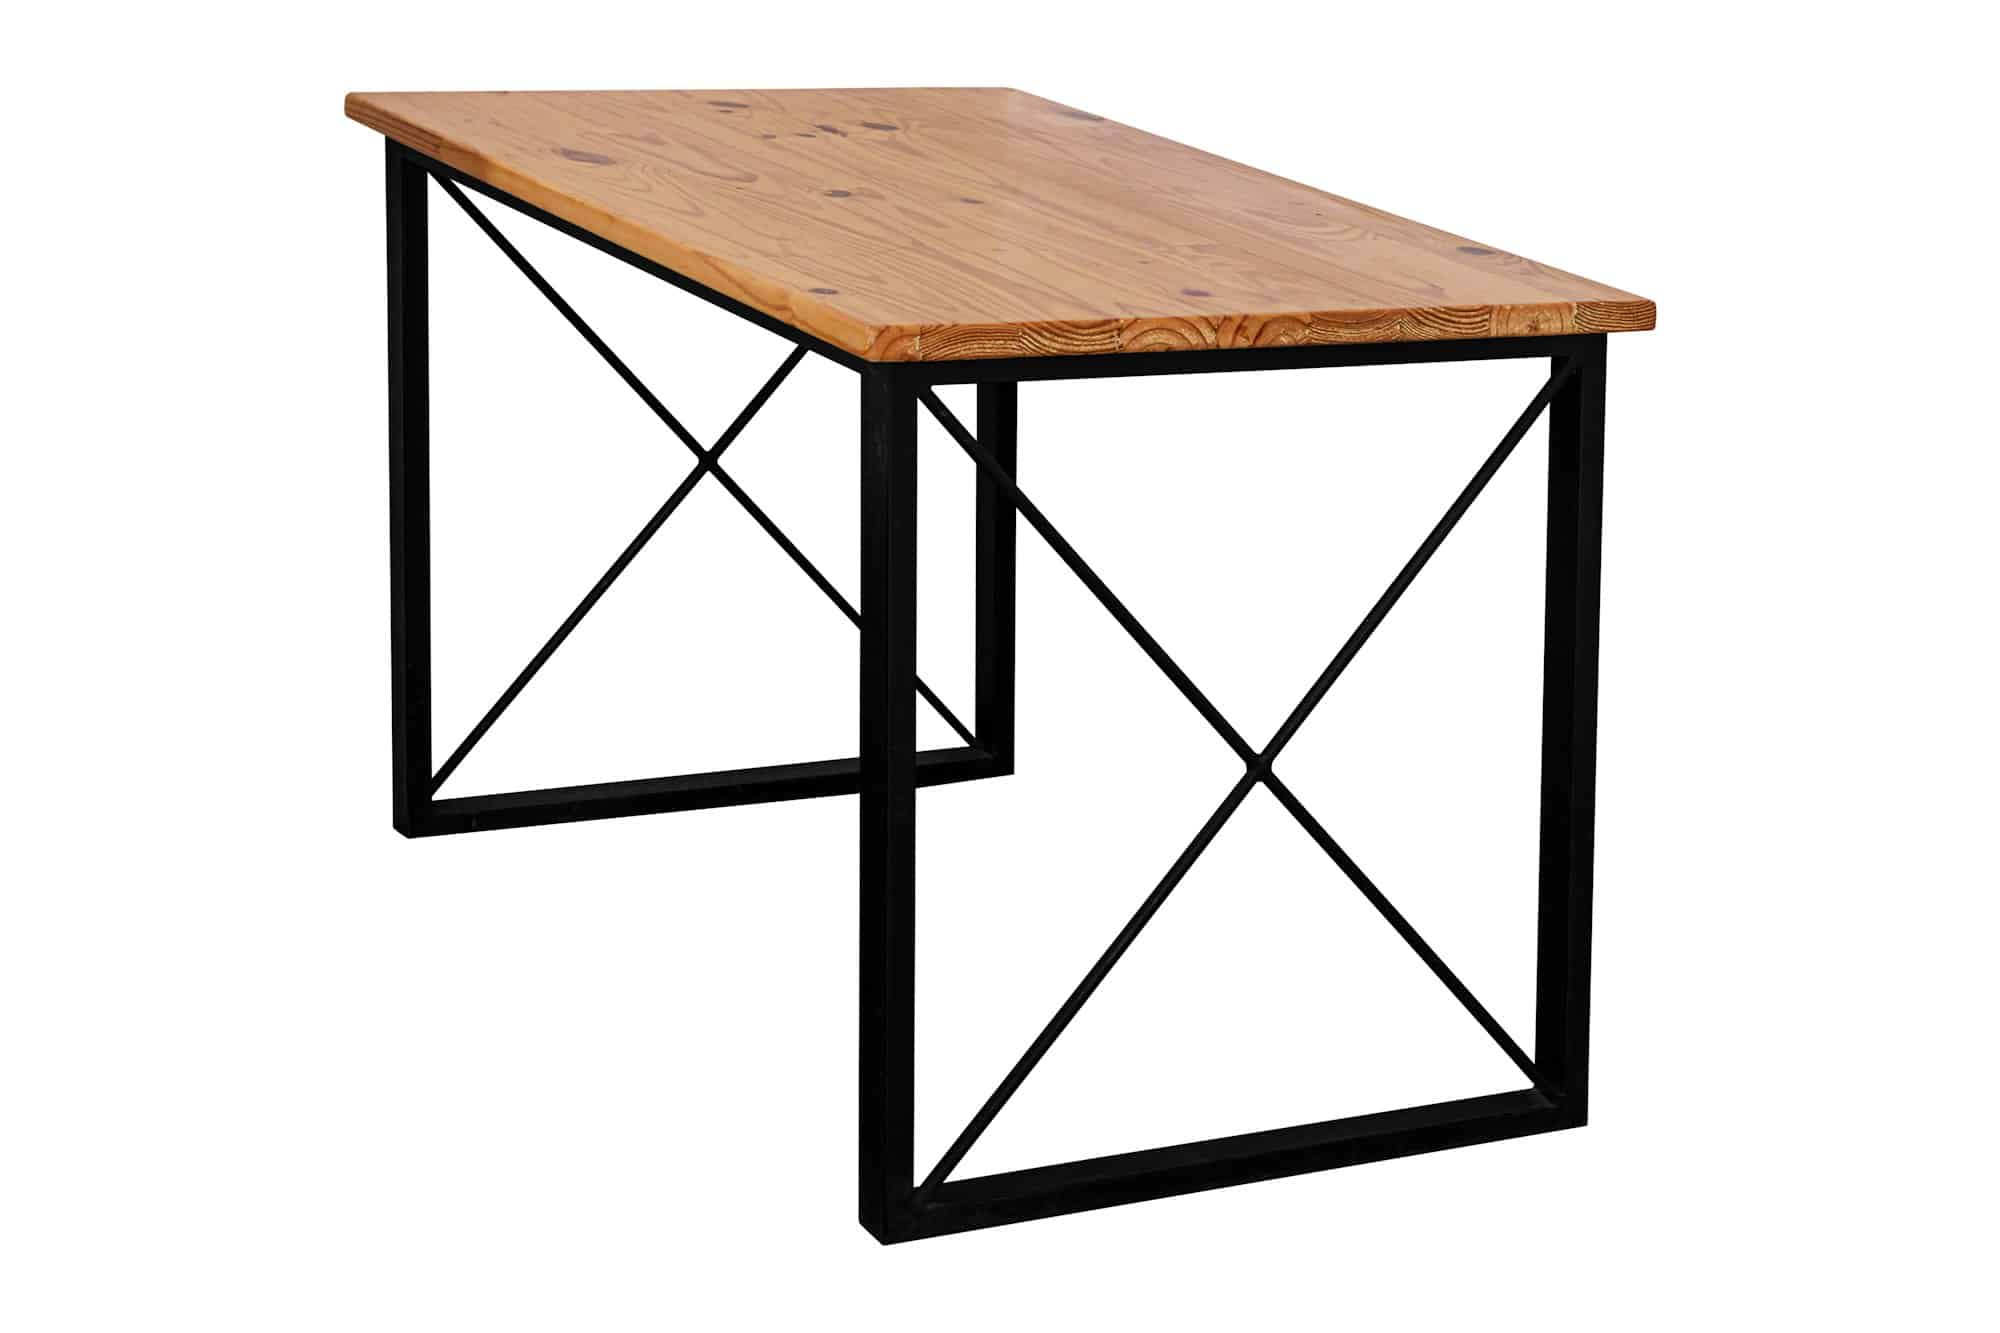 Pied de table : un élément clé dans la conception de votre table